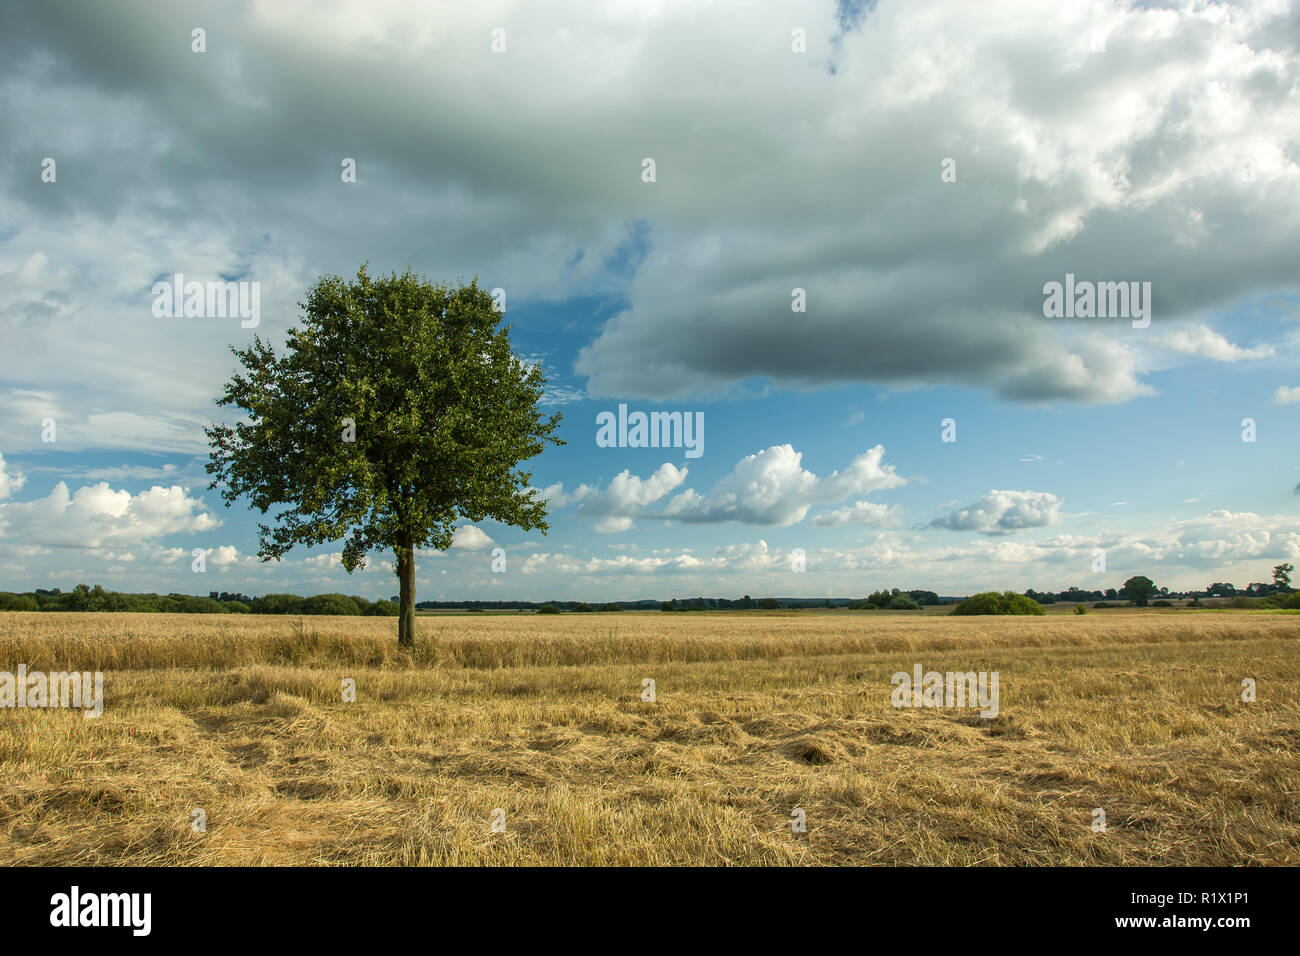 Unico albero a foglie decidue in un campo, i trend con orizzonte di riferimento e nuvole nel cielo Foto Stock